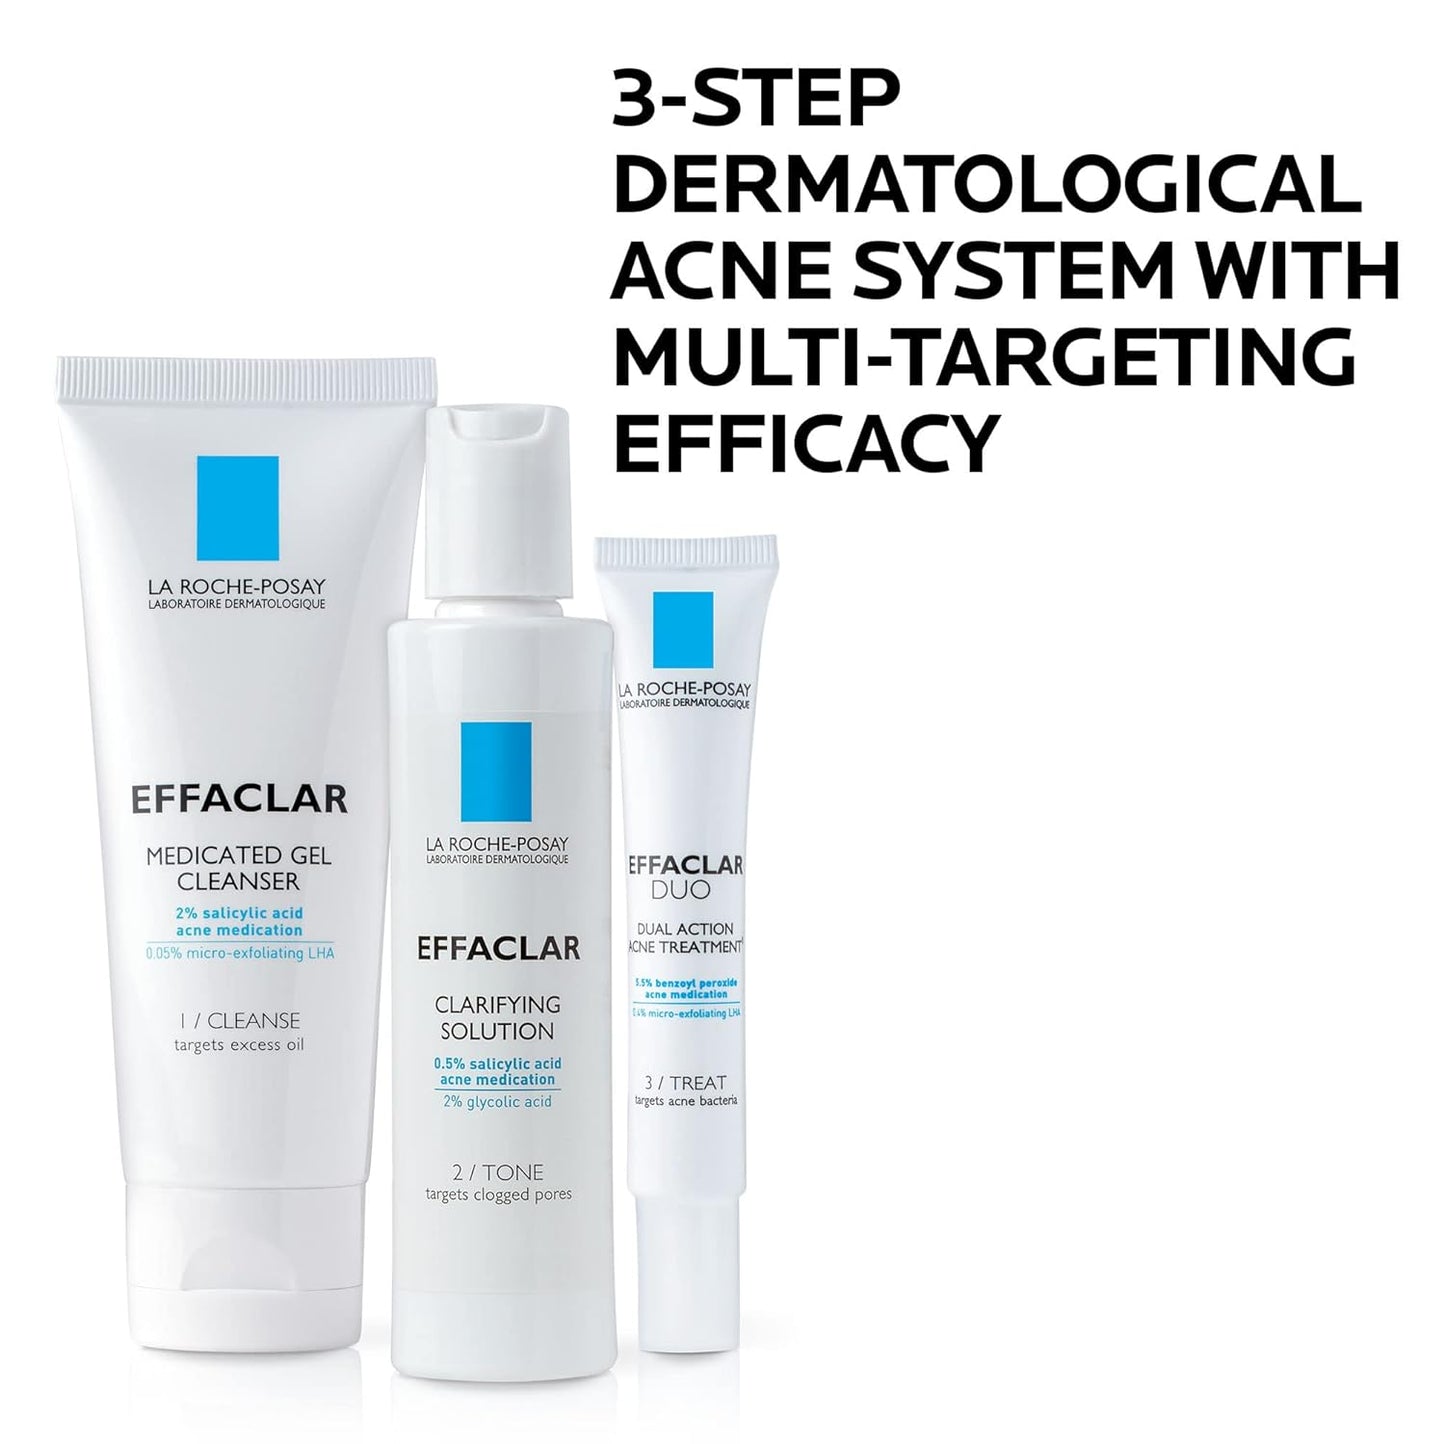 The Effaclar Acne System